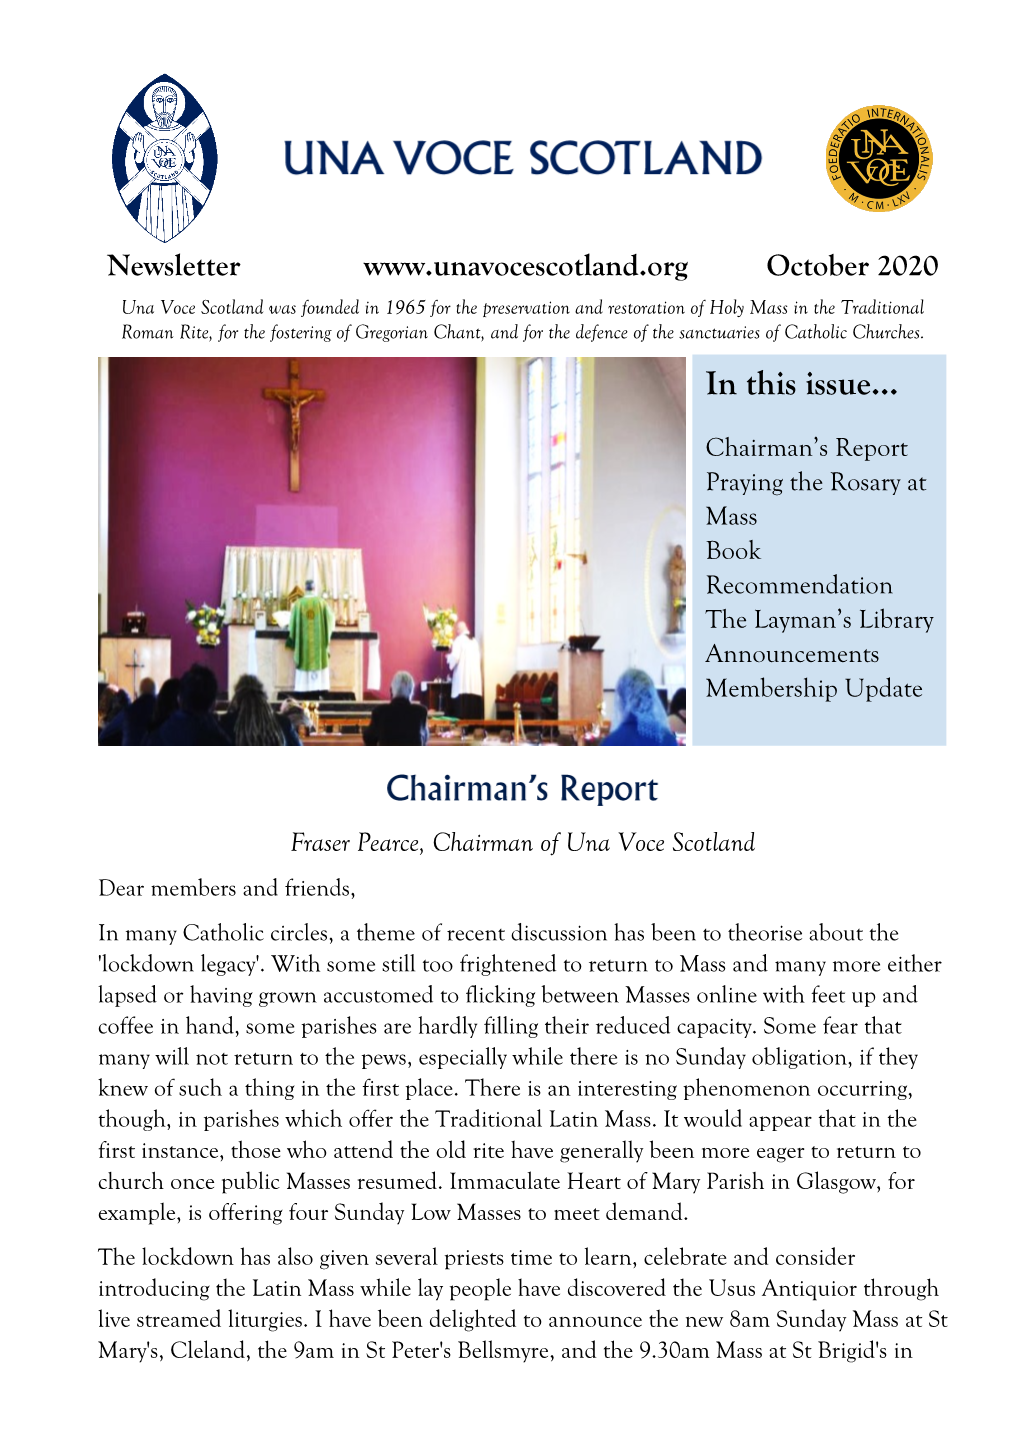 October Newsletter 2020